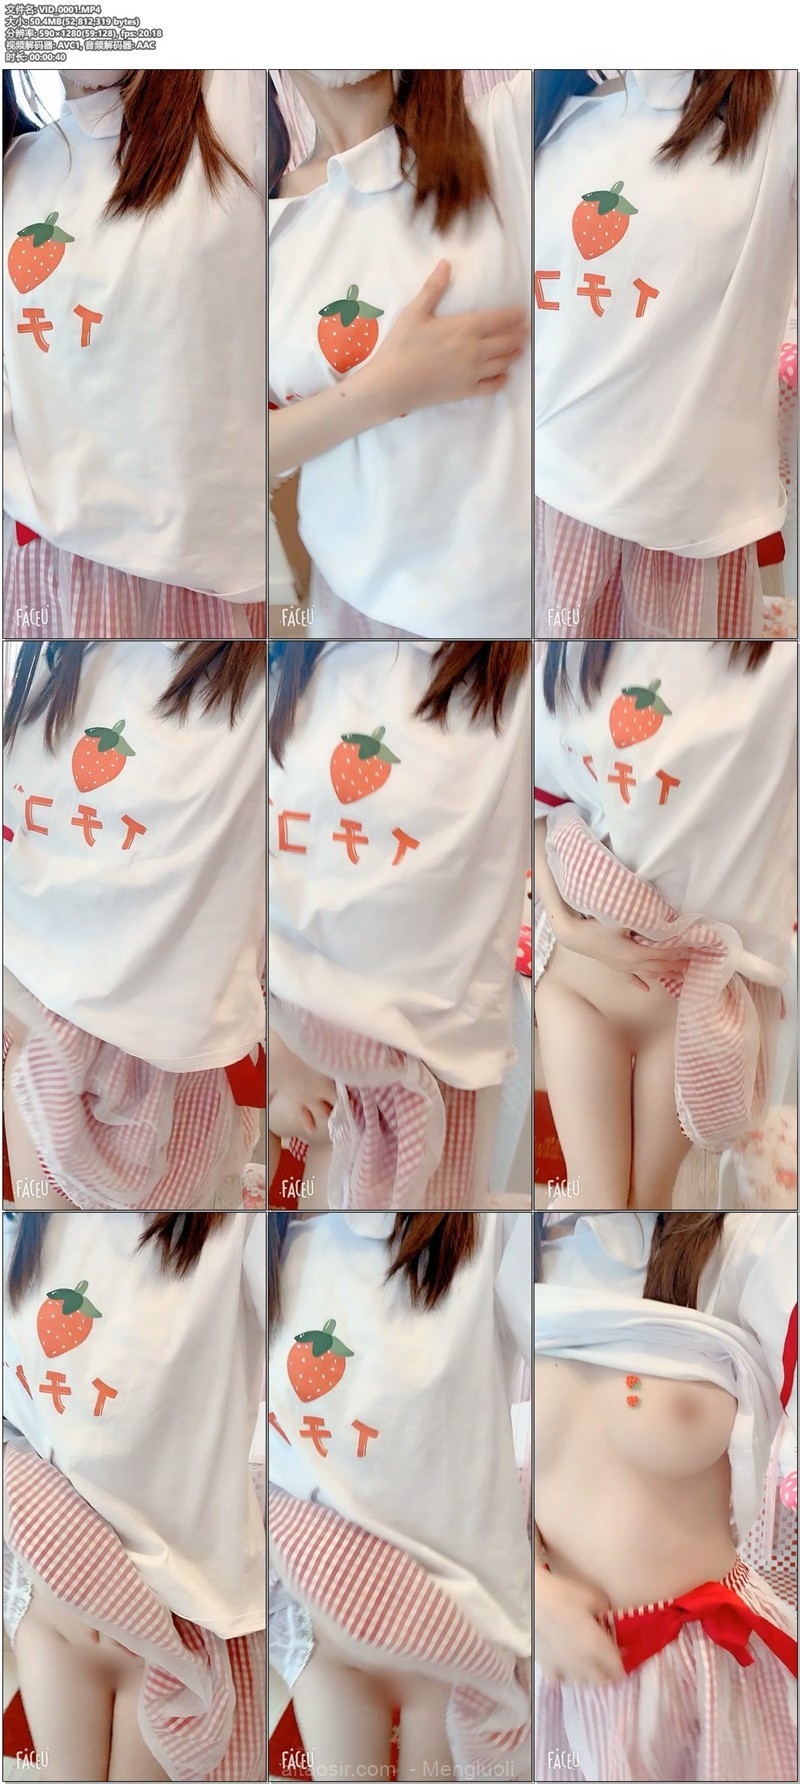 [会员][视图]超可爱粉嫩 福利姬@双马尾萝莉赛高酱之草莓萝莉裙（76P/2V/132MB）插图10